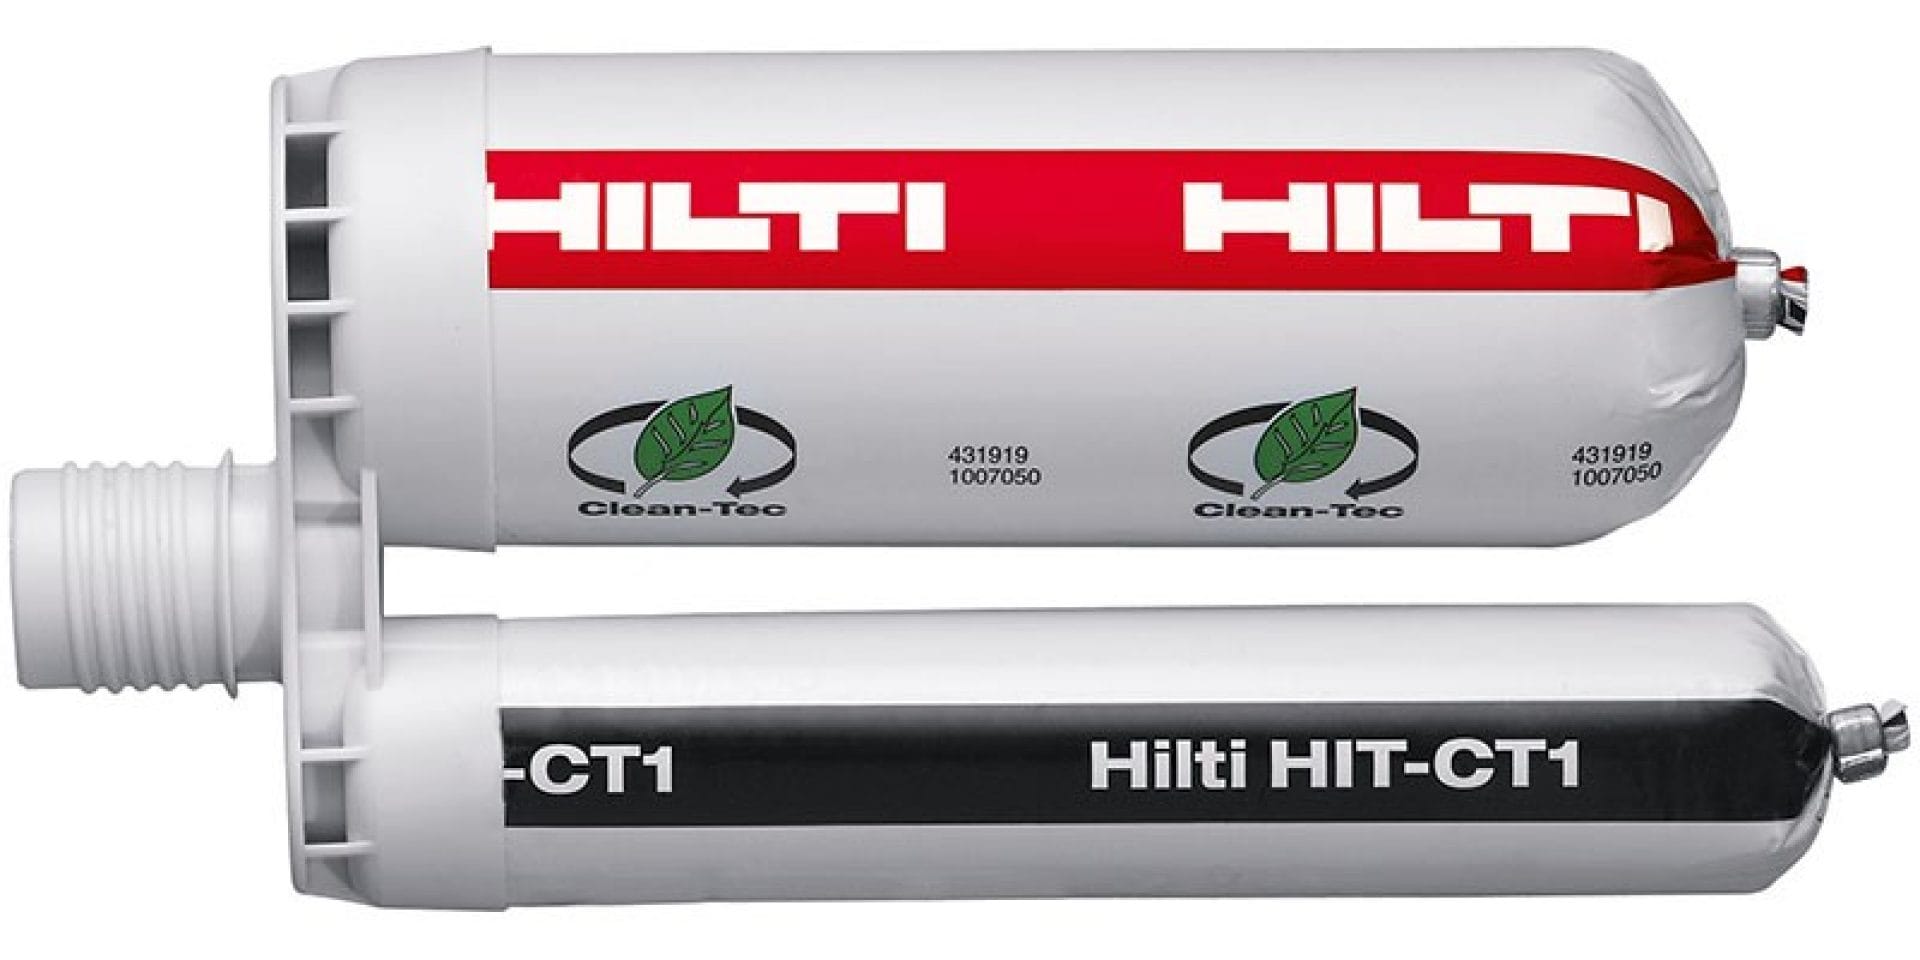 HIT-CT 1 betonmørtel med ren teknologi som en del af Hilti SafeSet systemet